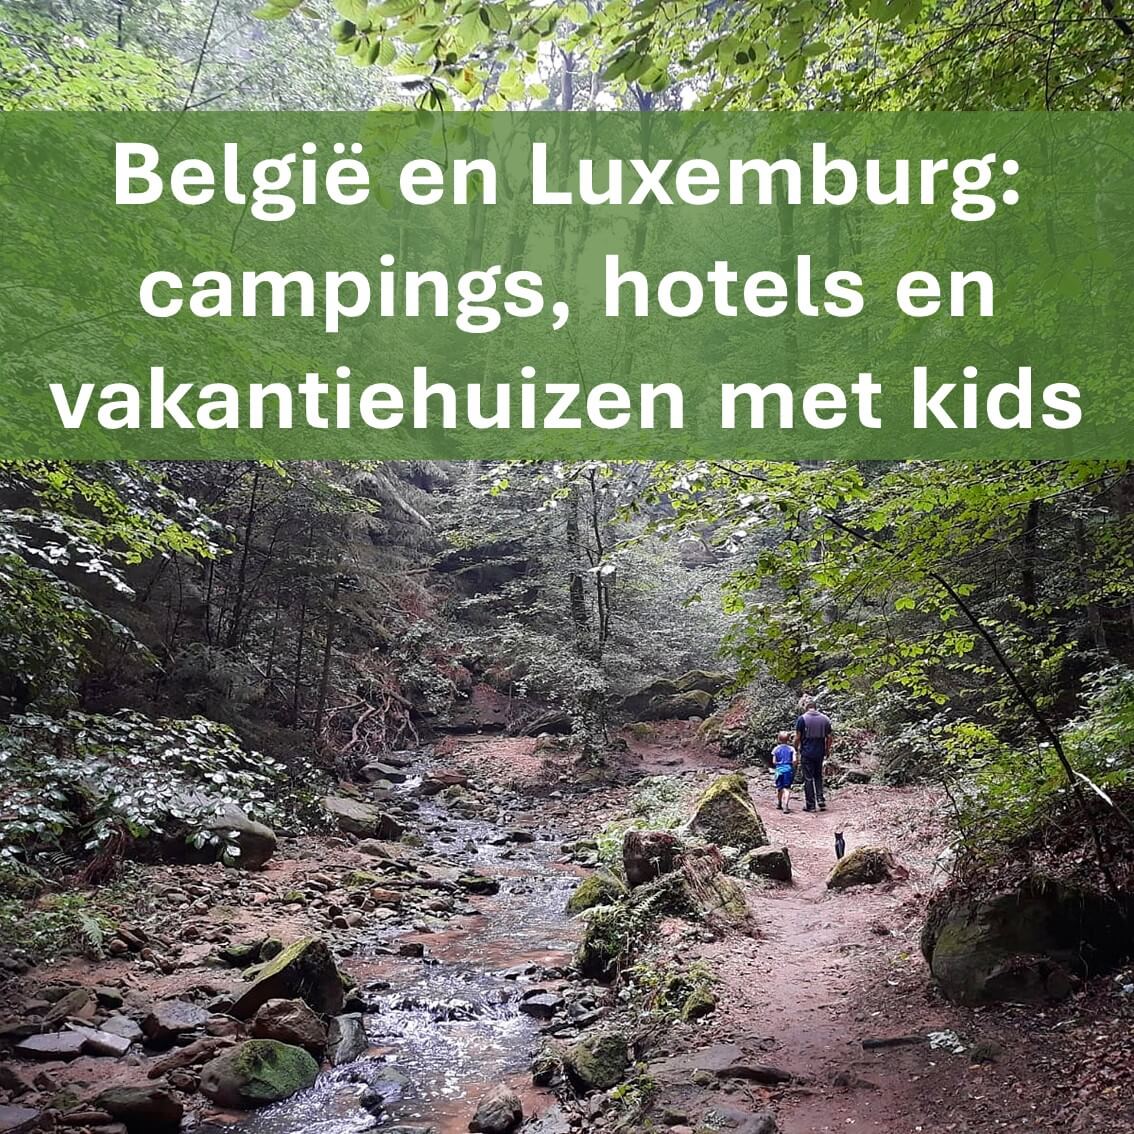 Campings, hotels en vakantiehuizen met kinderen in België en Luxemburg. Op zoek naar een leuke campings, vakantiehuis, hotel of andere plek om te overnachten bij onze zuiderburen? We verzamelen hier leuke campings, vakantiehuizen en hotels met kinderen en tieners in België en Luxemburg.